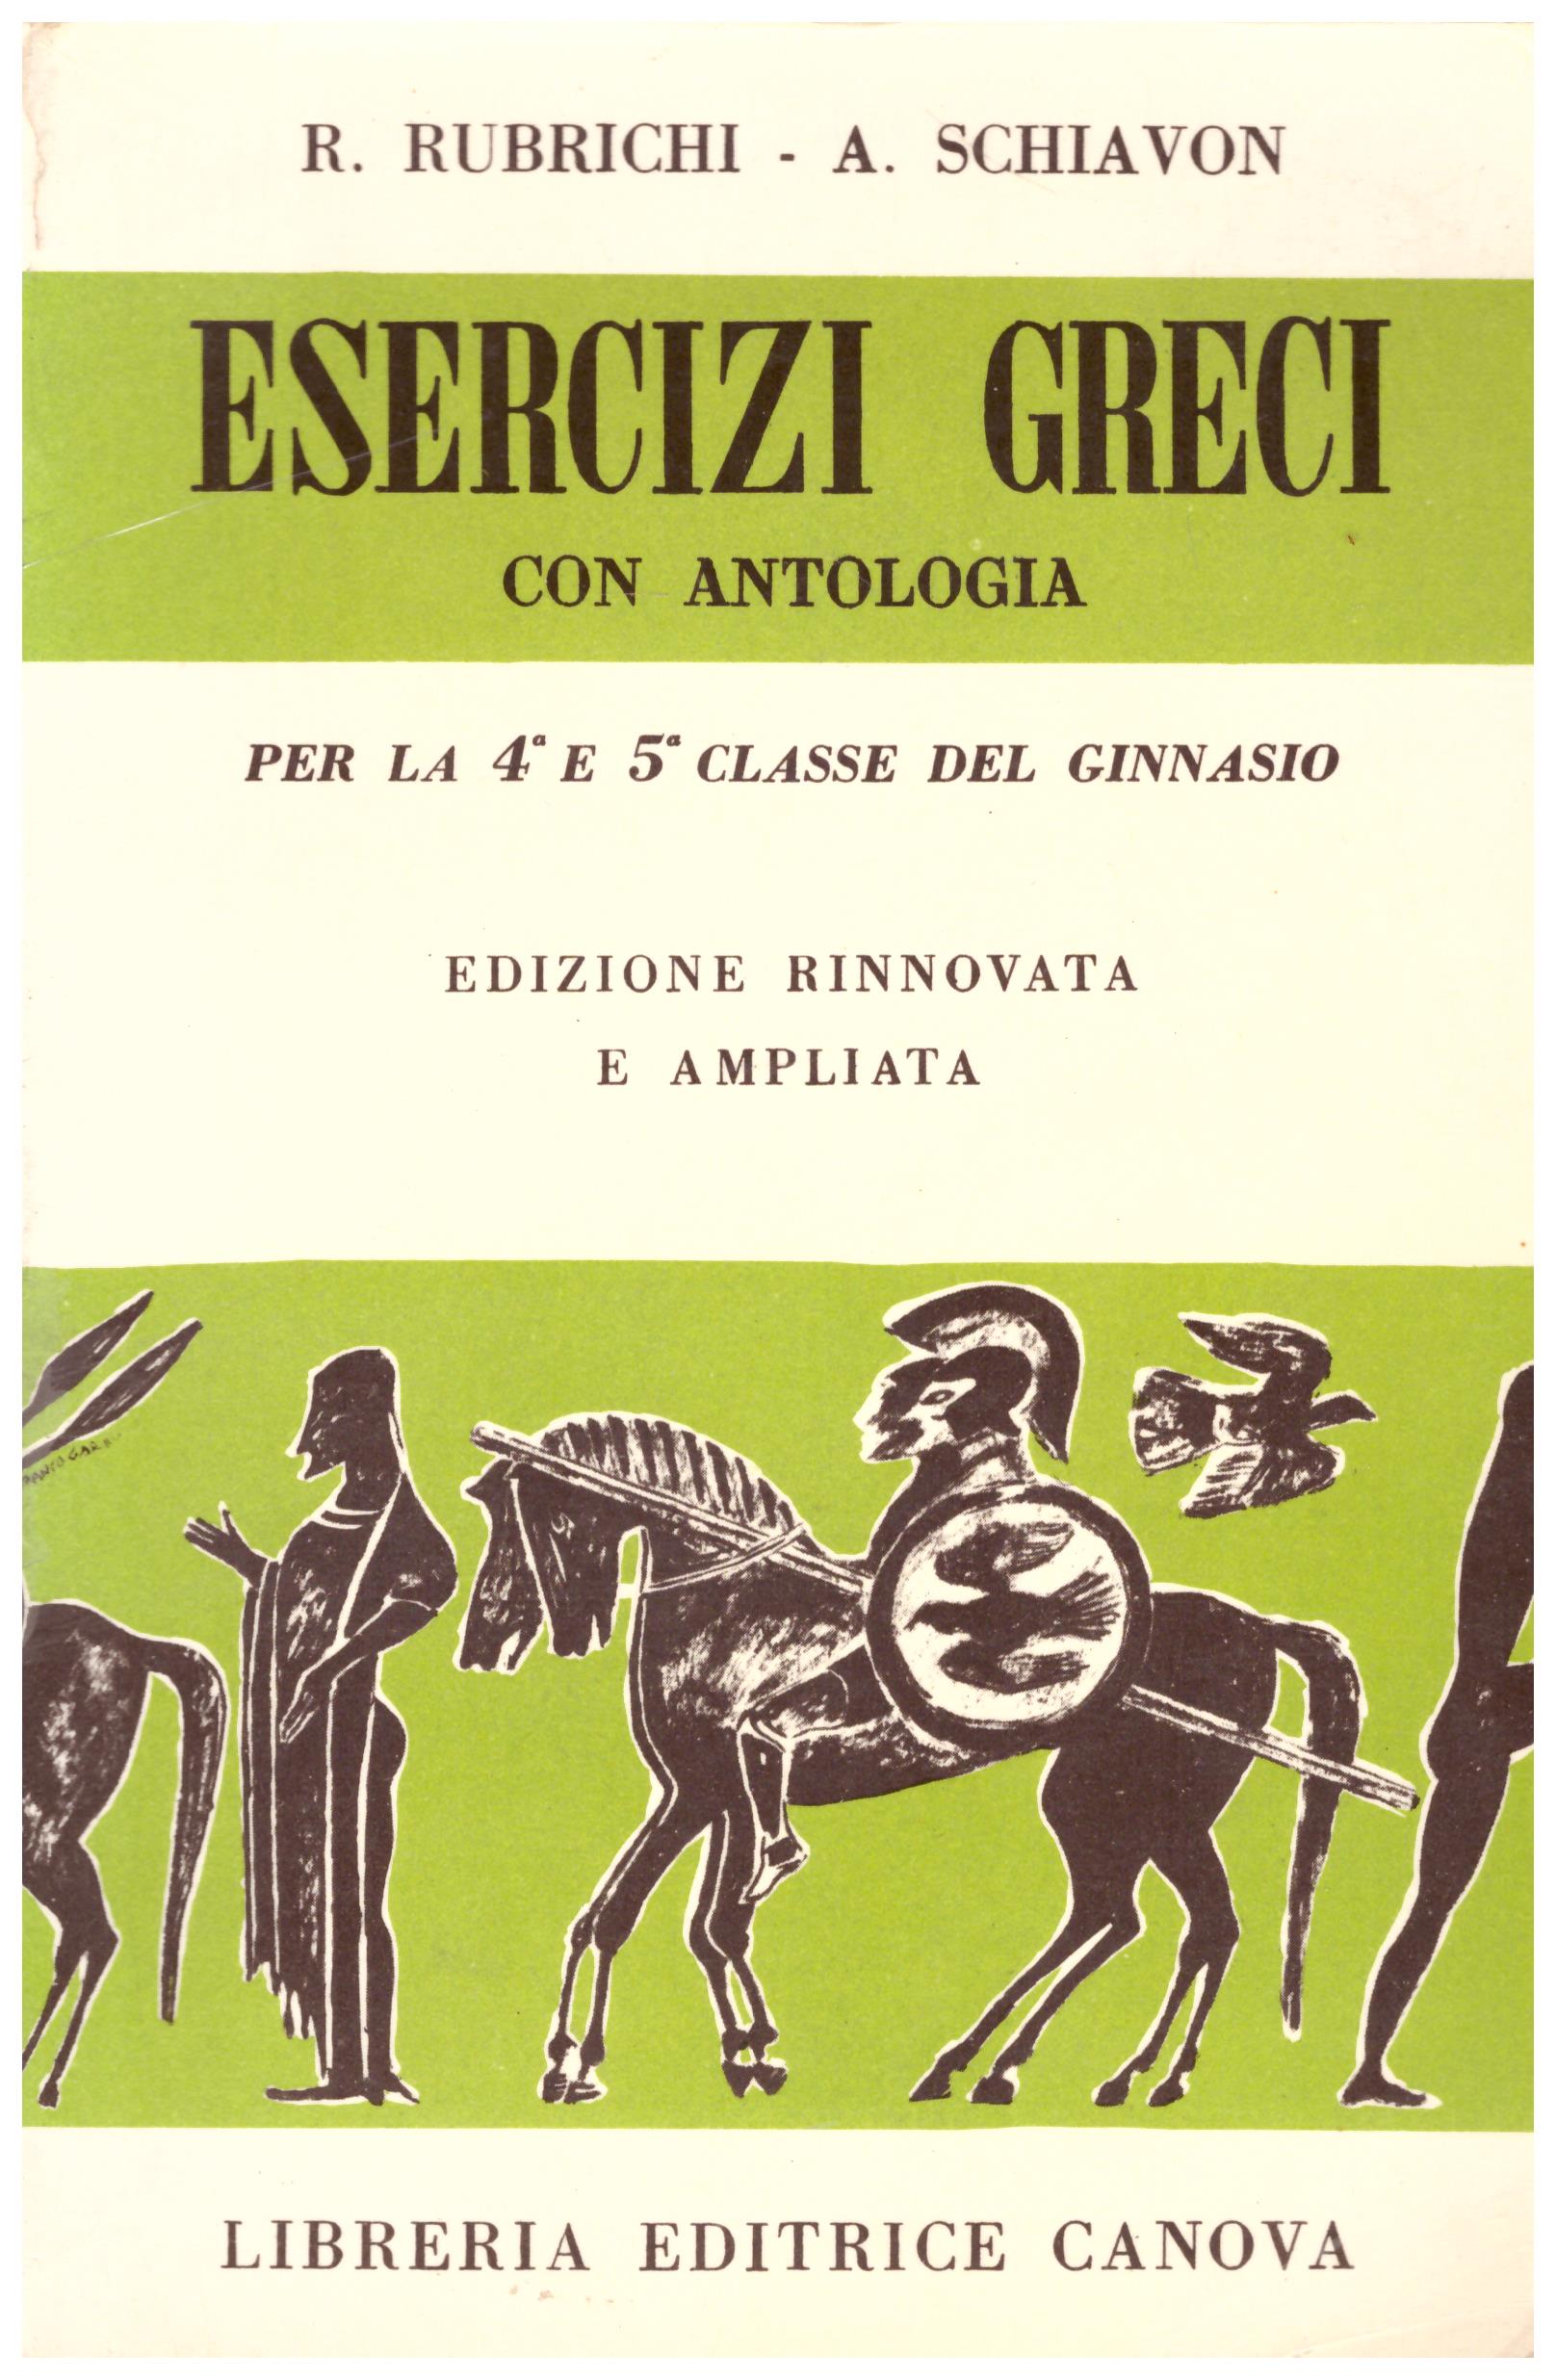 Esercizi greci con antologia. Per la classe IV e V del Ginnasio.